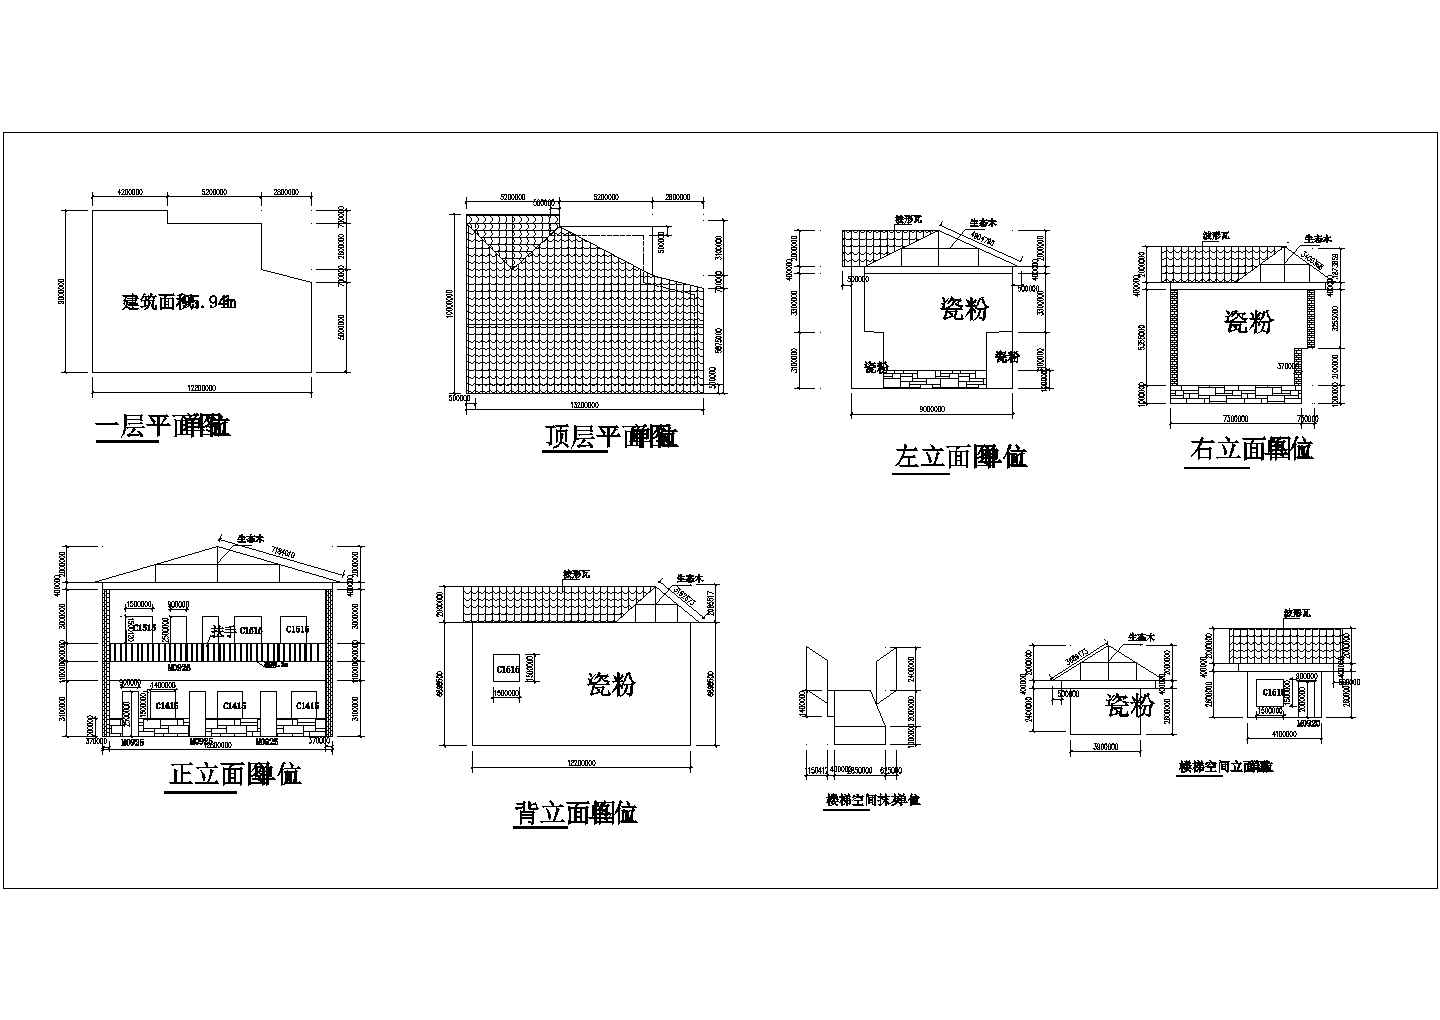 【贵安】新区村民房改造方案工程竣工图